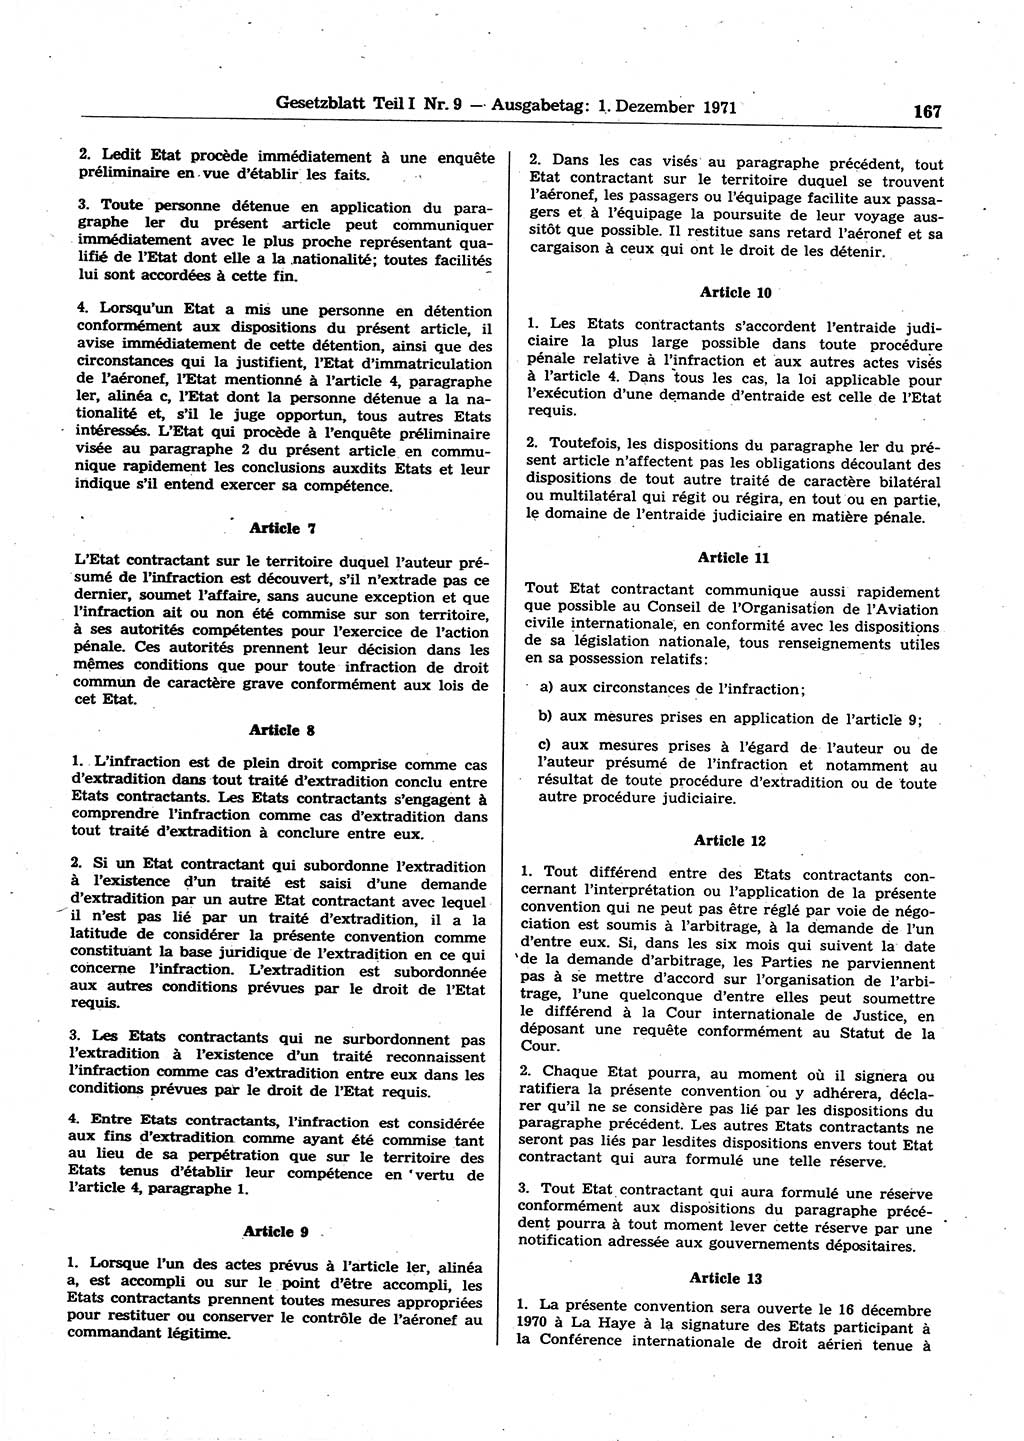 Gesetzblatt (GBl.) der Deutschen Demokratischen Republik (DDR) Teil Ⅰ 1971, Seite 167 (GBl. DDR Ⅰ 1971, S. 167)